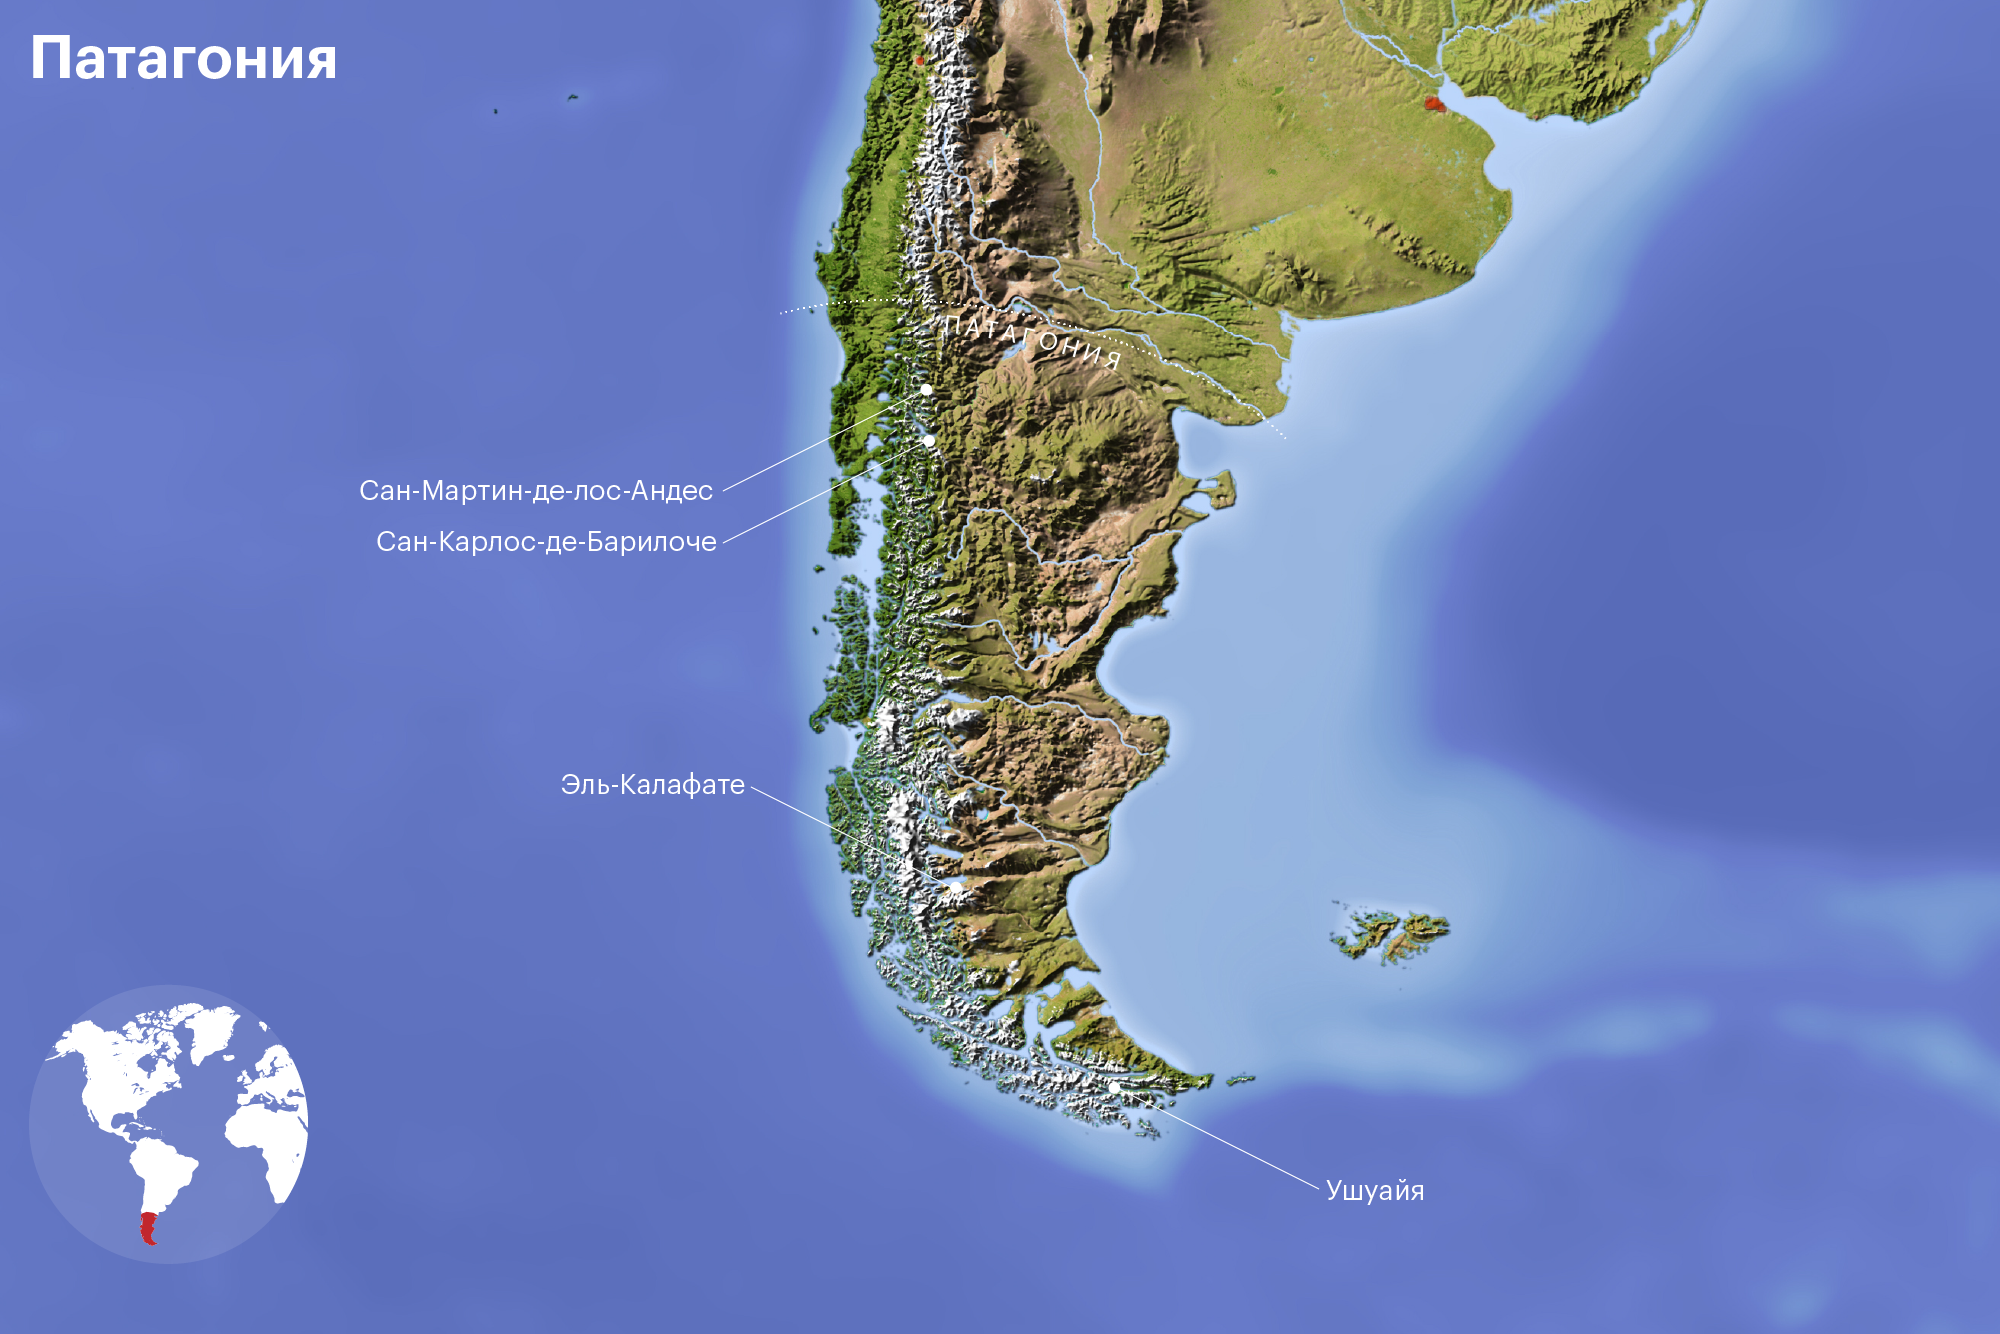 Карта Патагонии, аргентинская и чилийская стороны. На аргентинской стороне отмечены ключевые точки из статьи: Ушуайя, Эль-Калафате, Сан-Карлос-де-Барилоче, Сан-Мартин-де-лос-Андес